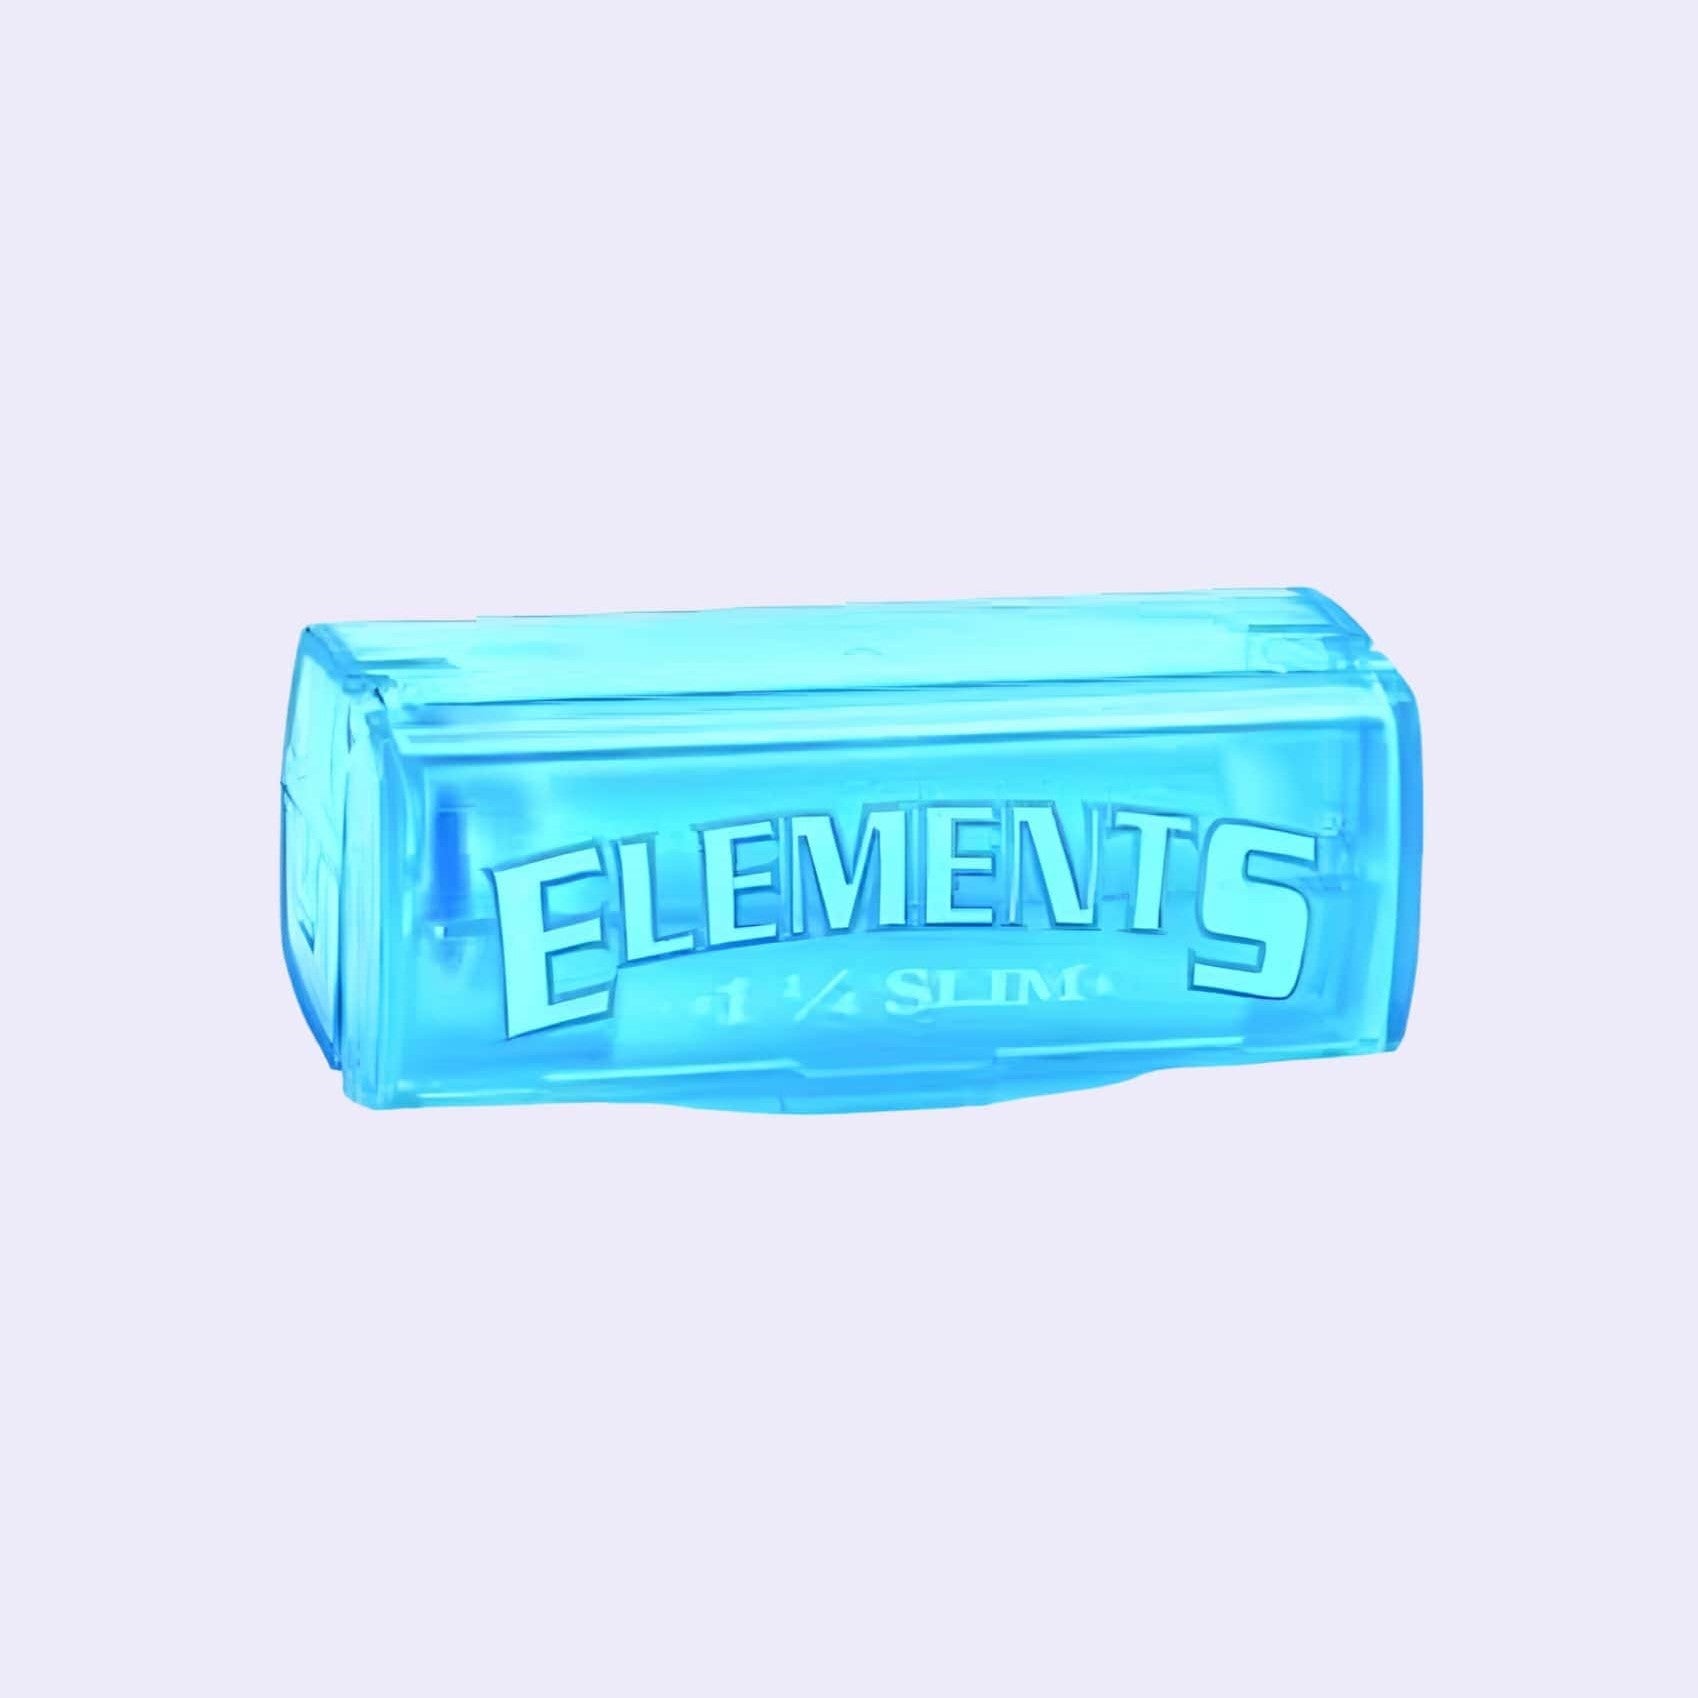 Dieses Bild zeigt die Elements Rolls Single Wide-Box von der Firma Elements